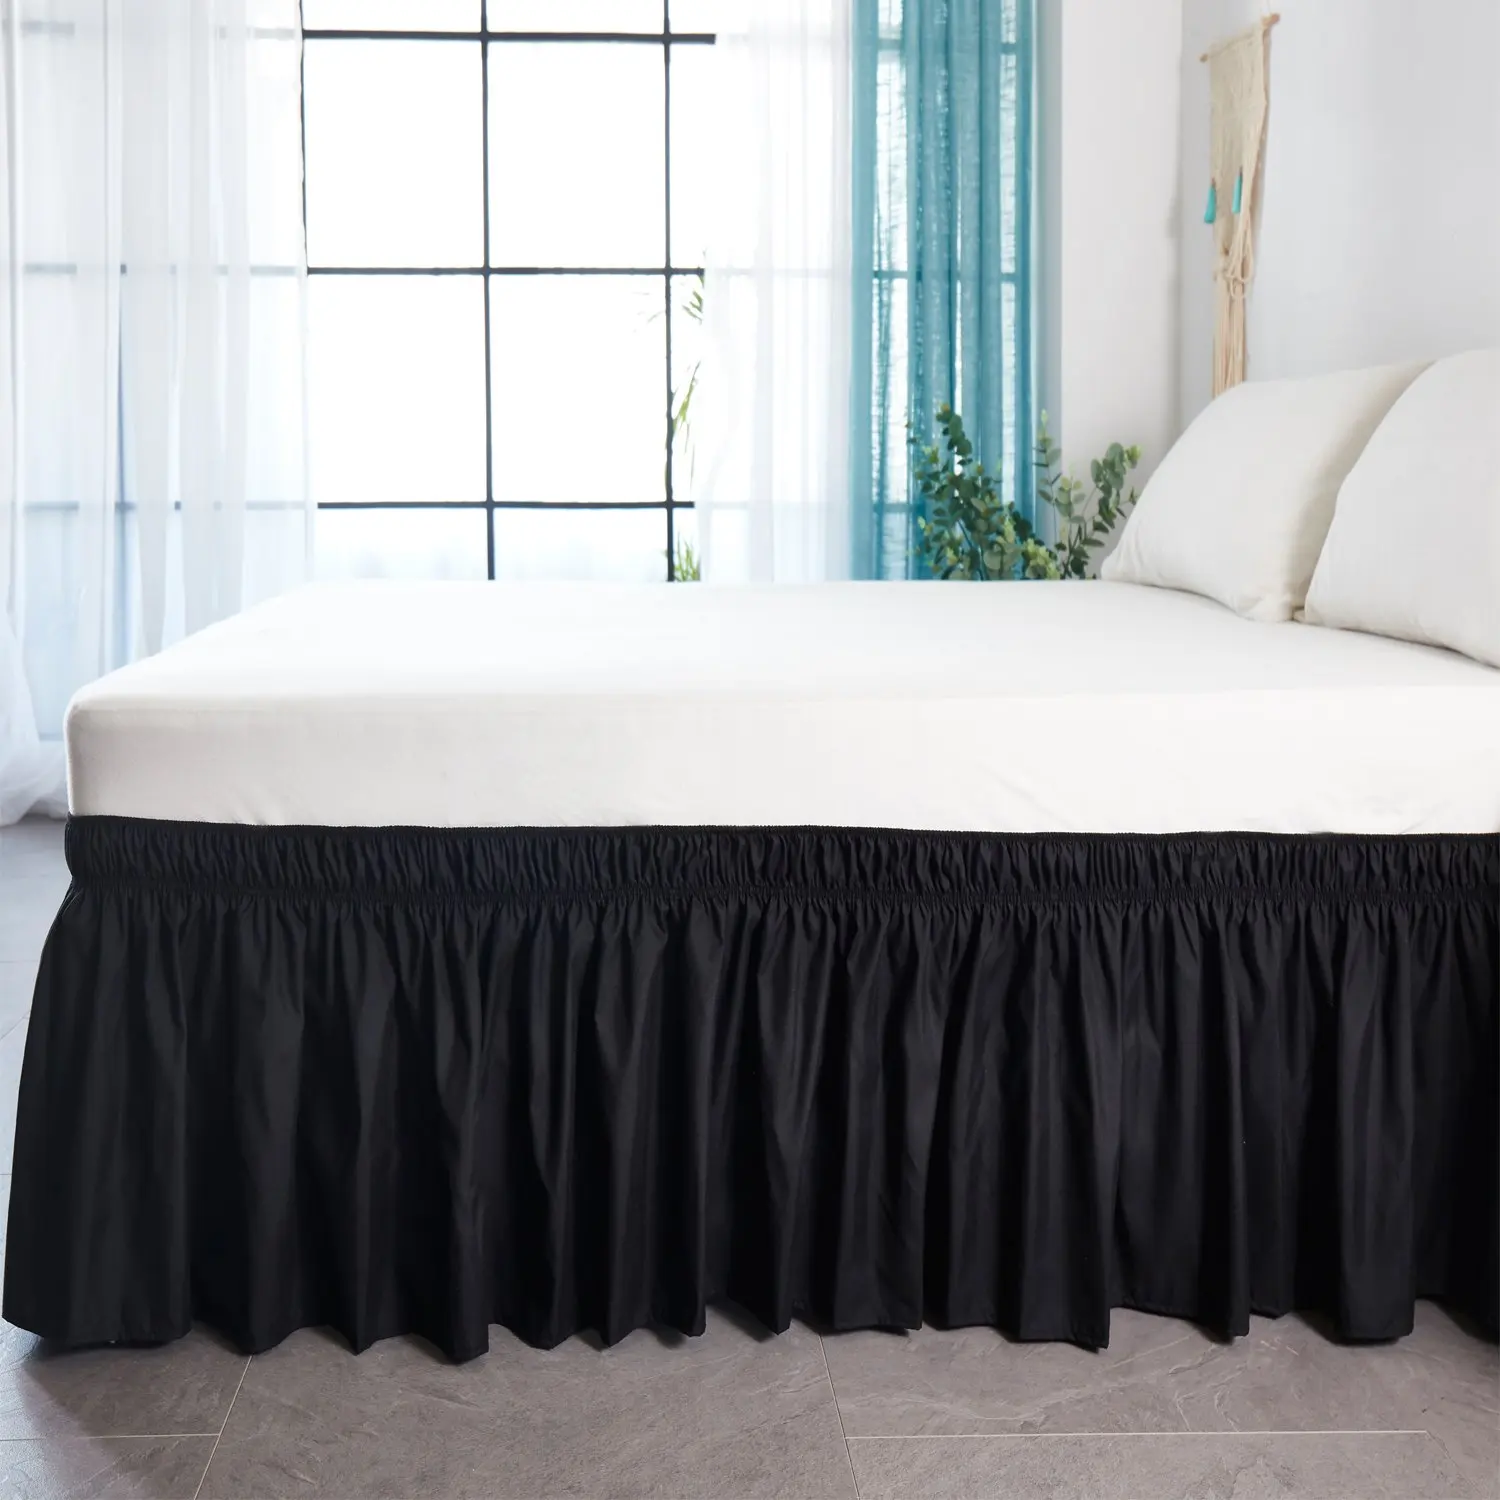 Гостиничная кровать юбка белая обмотка вокруг эластичных рубашек кровати без поверхности кровати Твин/Полный/королева/король размер 38 см Высота домашний декор